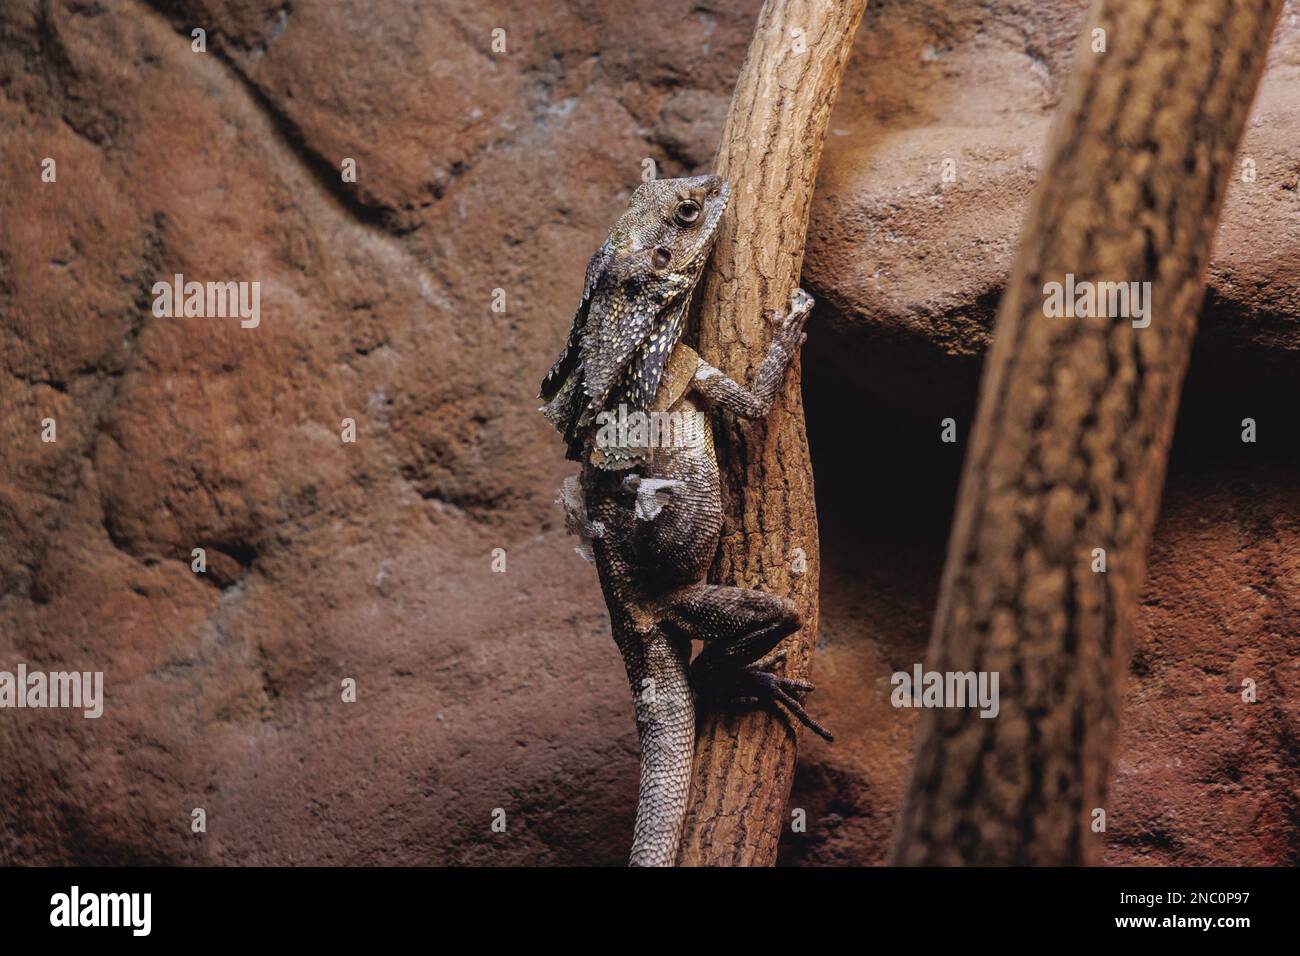 Frilled lizard - Chlamydosaurus kingii in a terrarium Stock Photo